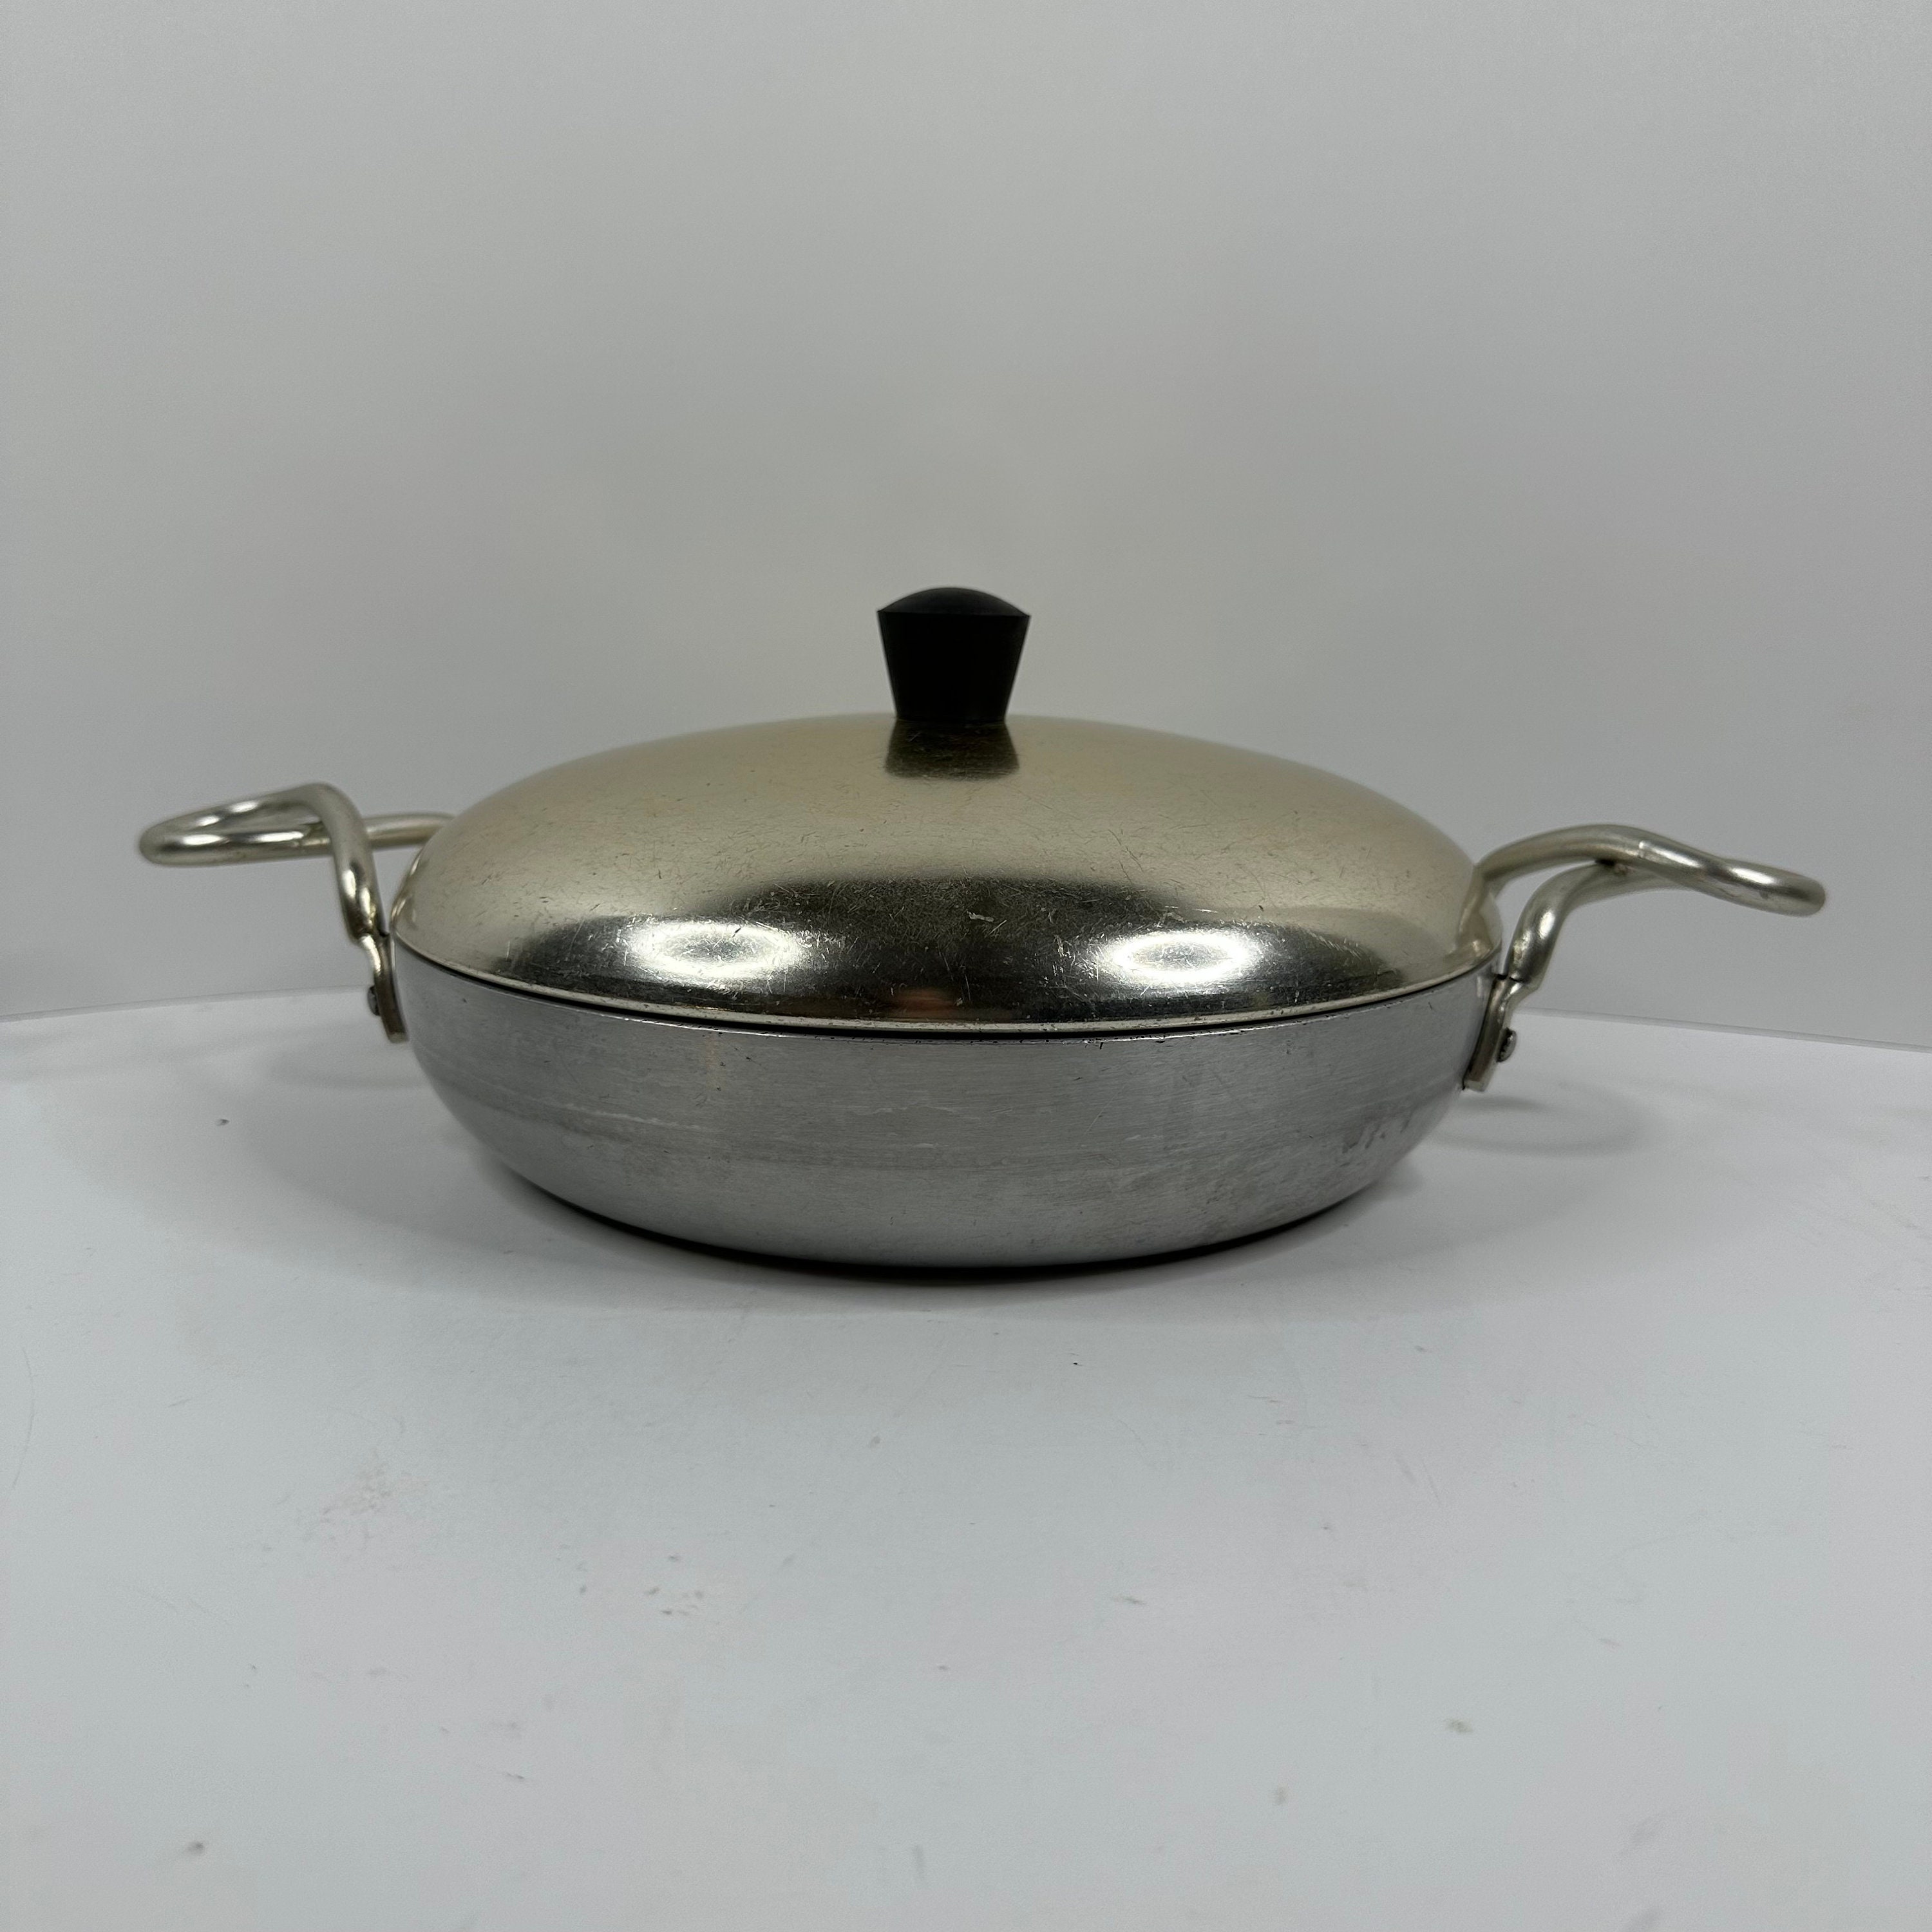 2 Vintage Wear-ever Cooking Pots No 752 & 751.5, 1.5 2 Qt Aluminum Pans,  Mid Century Modern, Star, Pair, Farmhouse Kitchen 